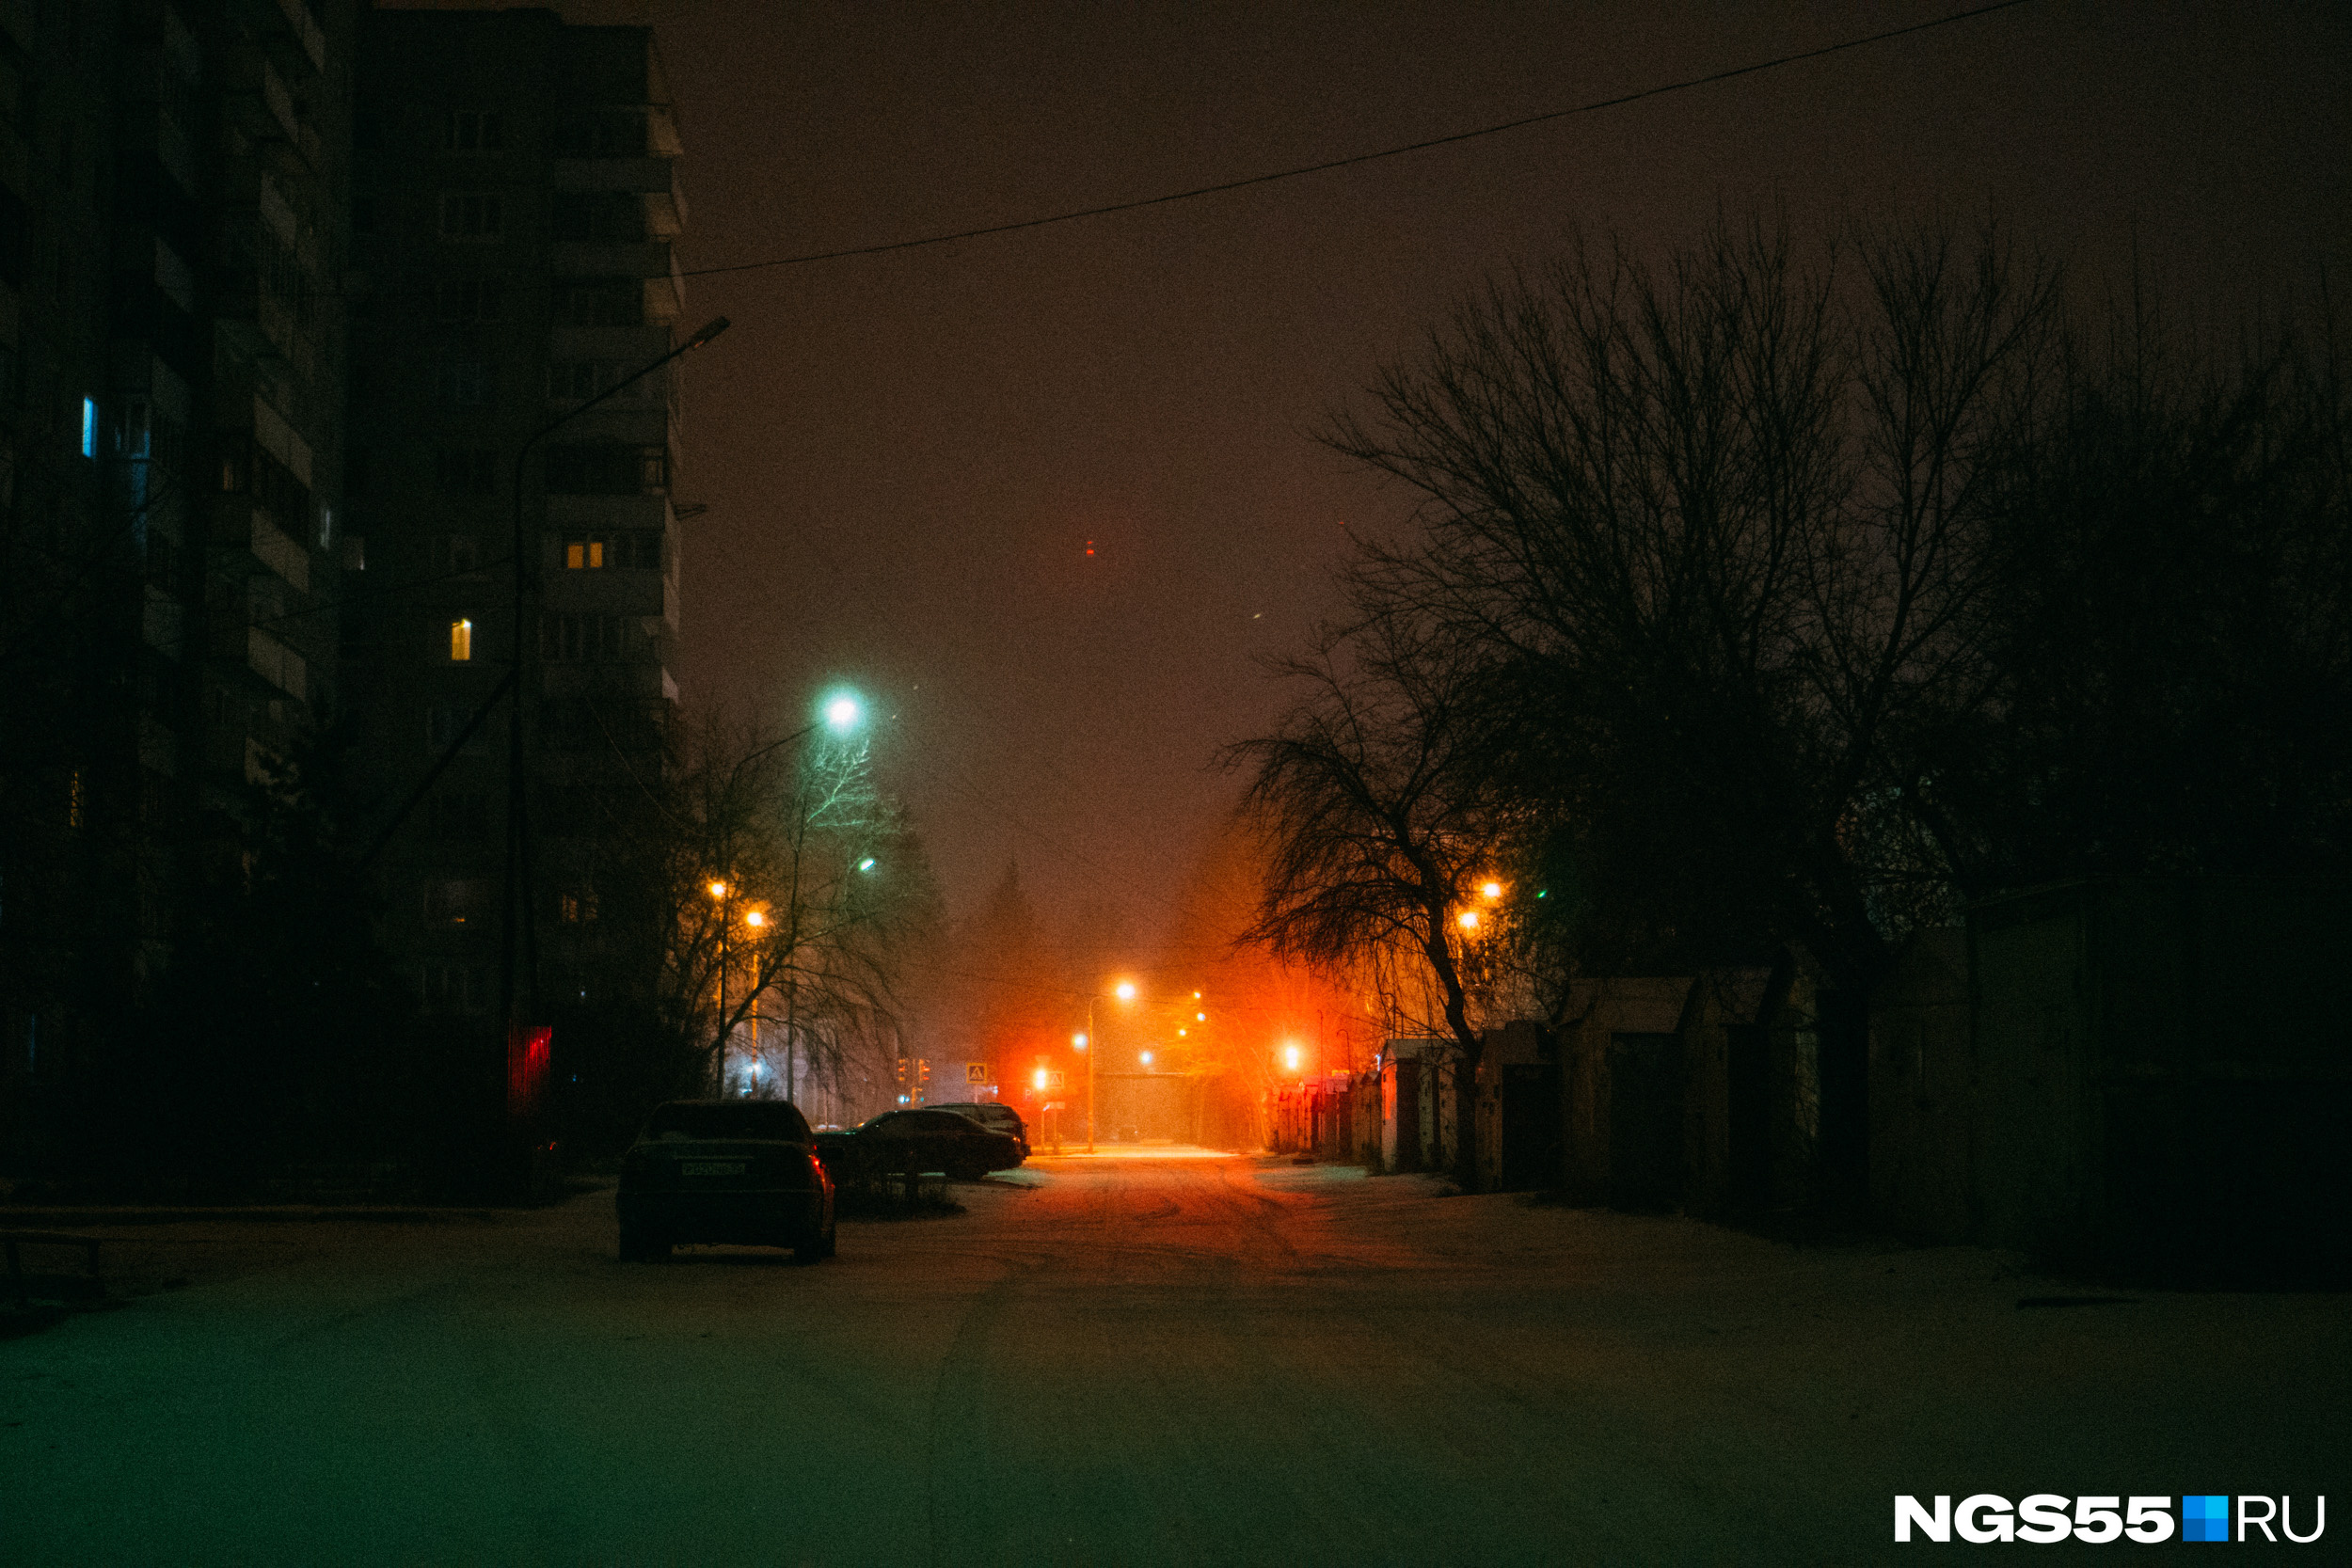 Свет в конце улицы манит, обещая больше ярких снежных зрелищ